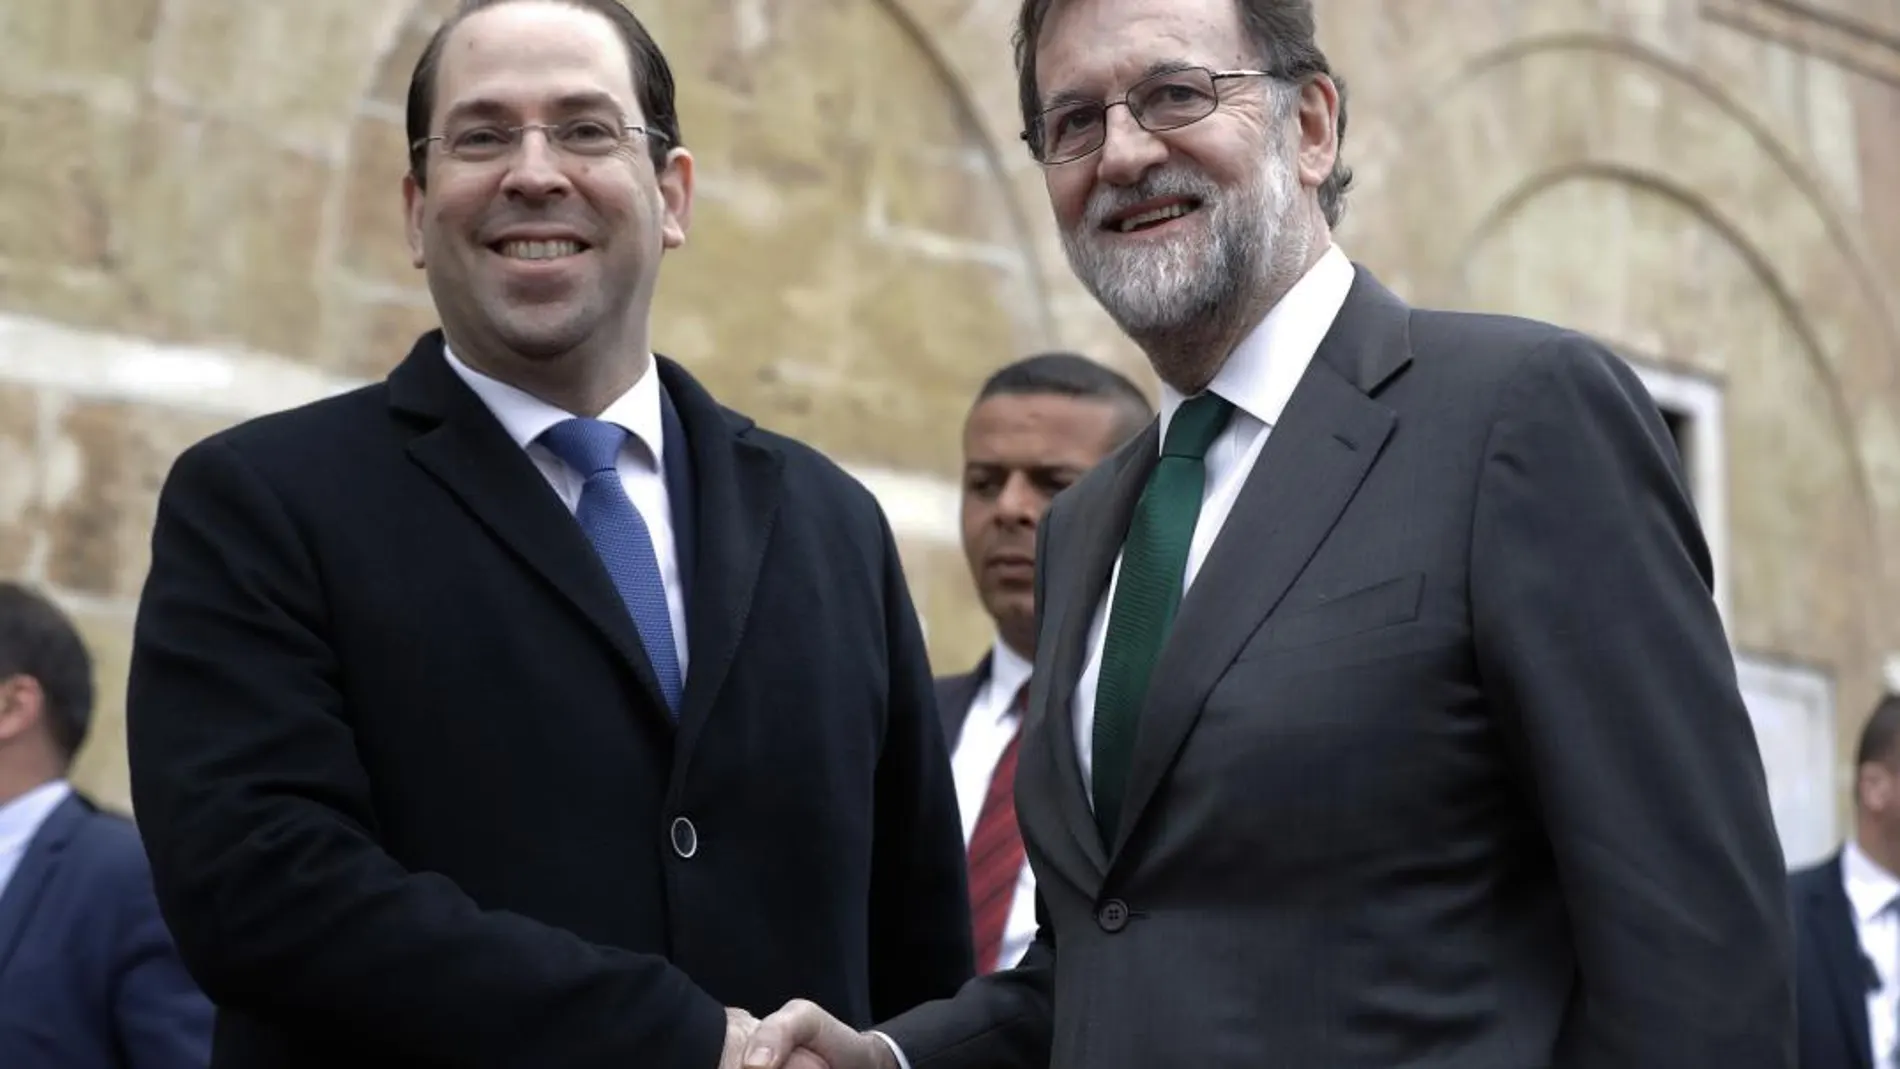 El presidente del Gobierno español, Mariano Rajoy, y su homólogo tunecino , Yusef Chahed , iz., tras la llegada del mandatario español a Túnez